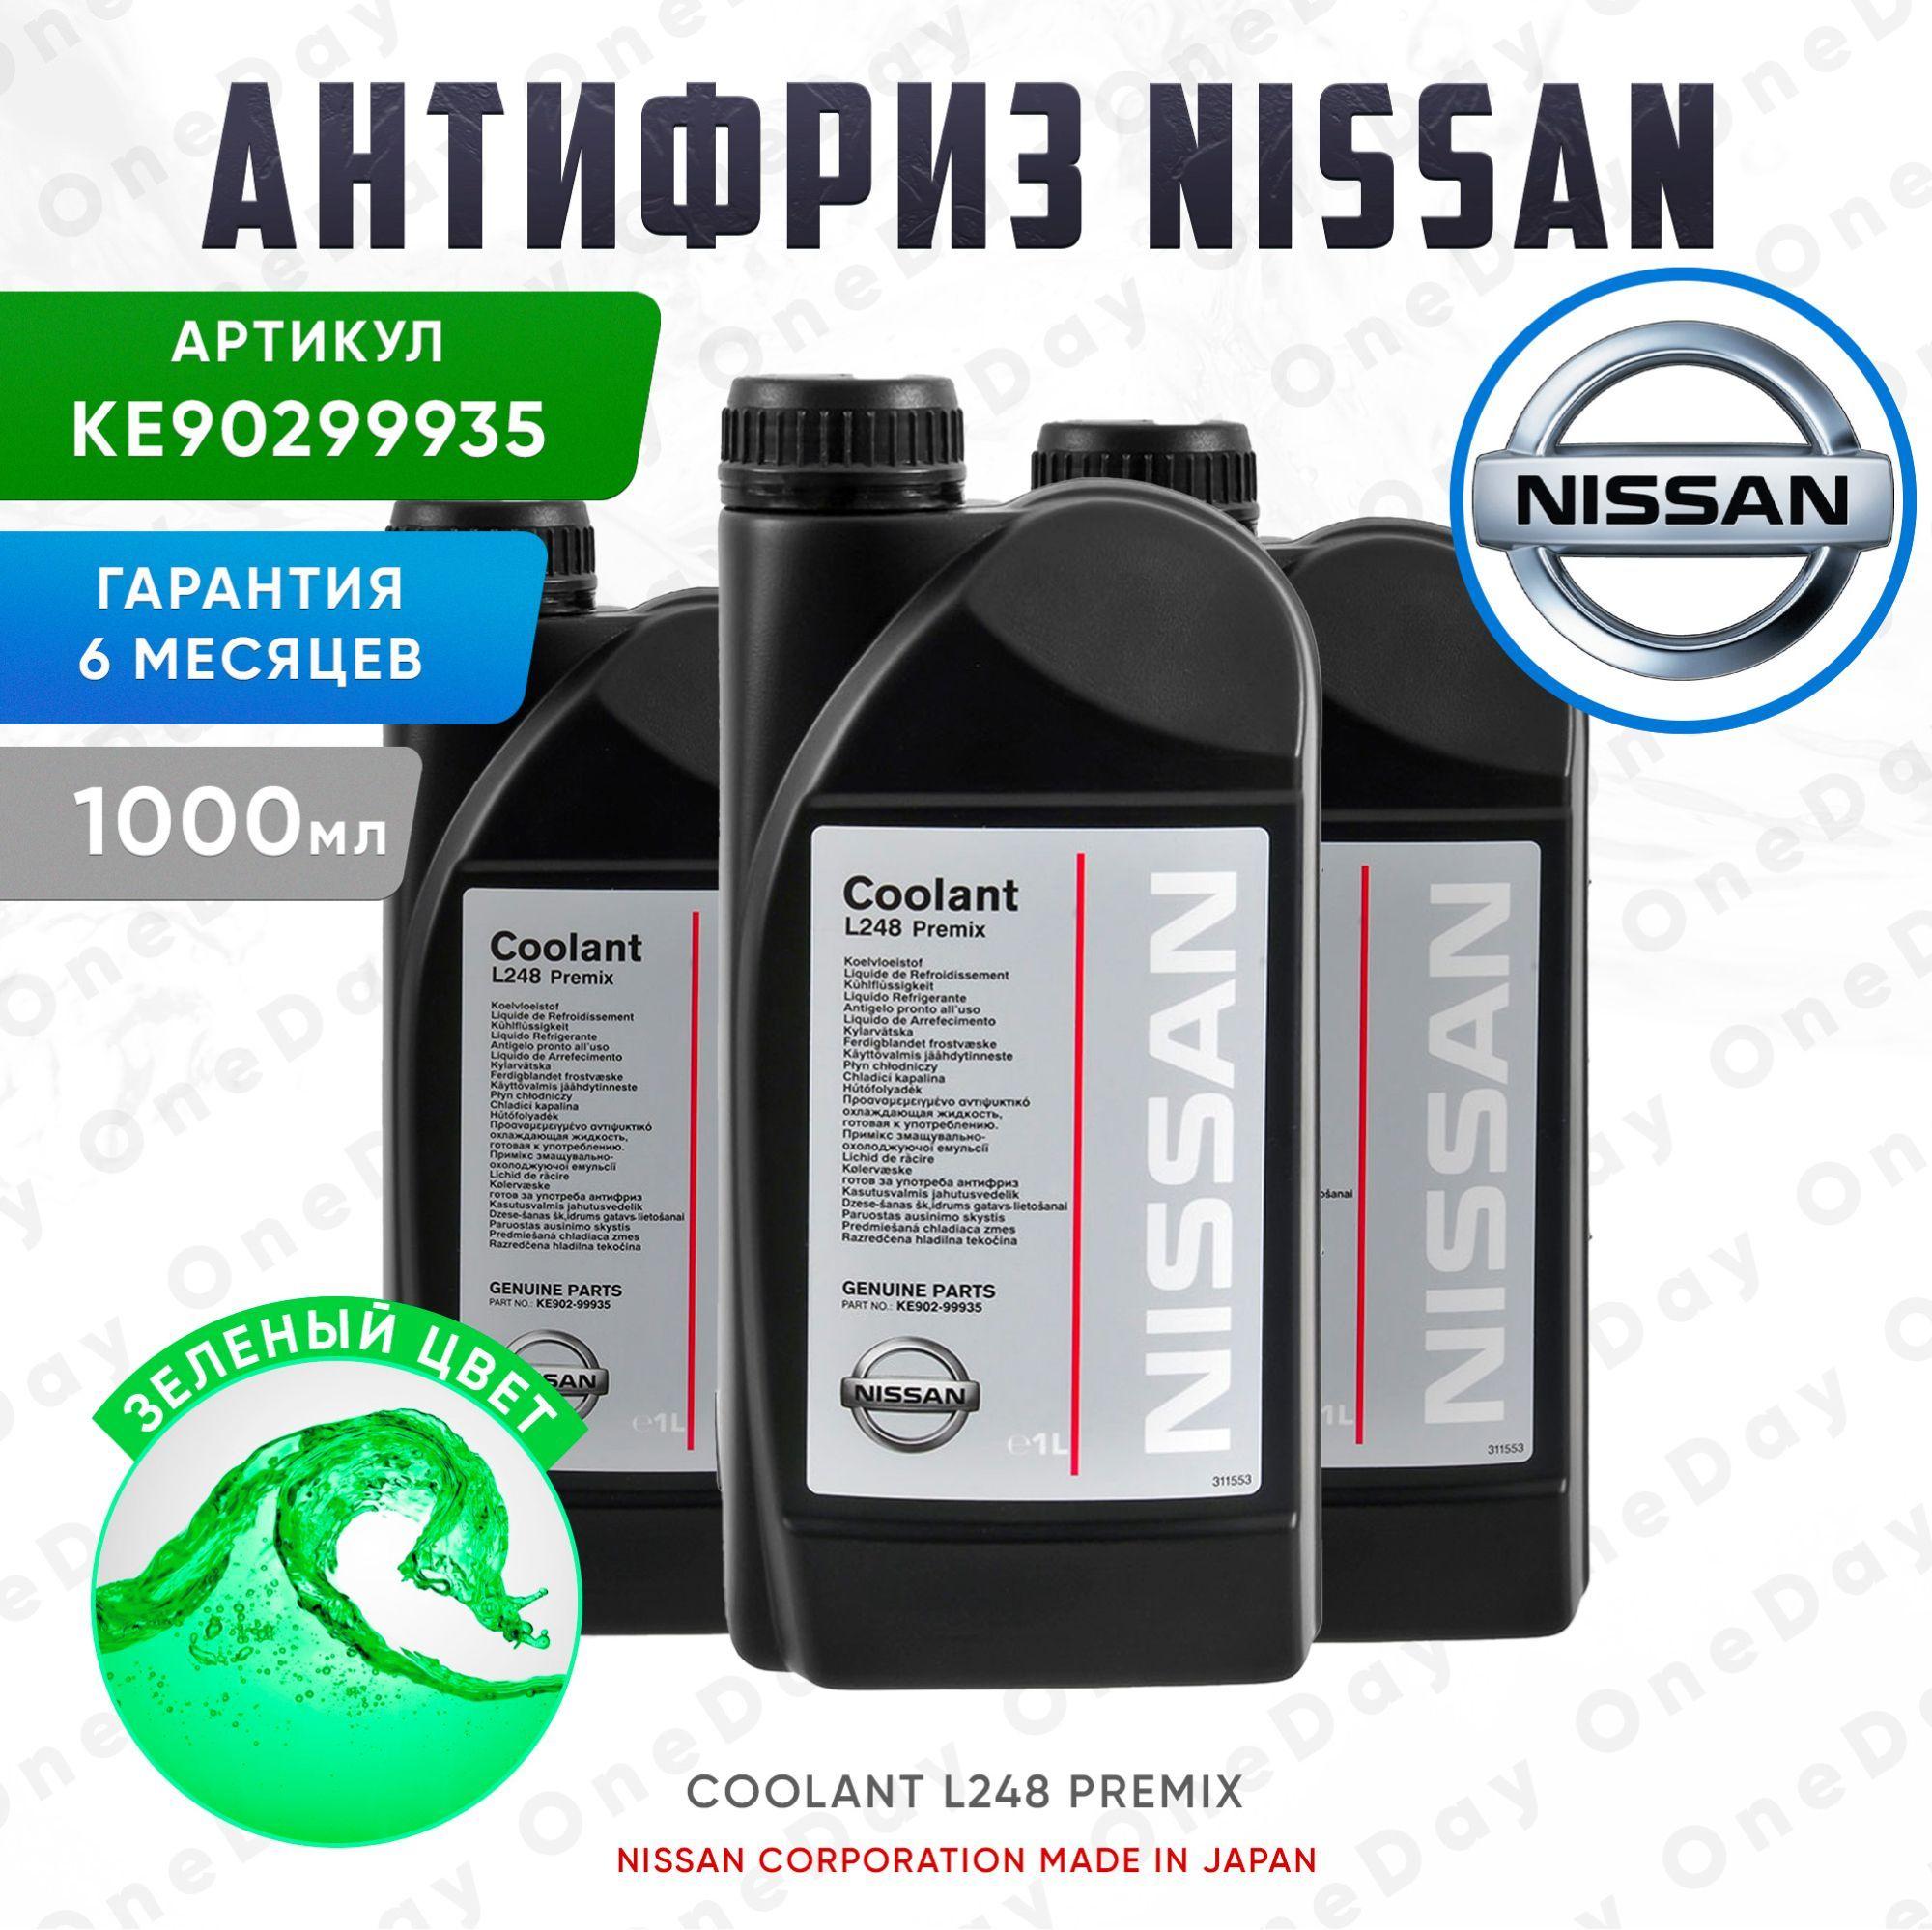 Антифриз готовый NISSAN Coolant L248 Premix, 1 л Жидкость охлаждающая Nissan (Ниссан), цвет зелёный, арт. KE902-99935, Оригинал